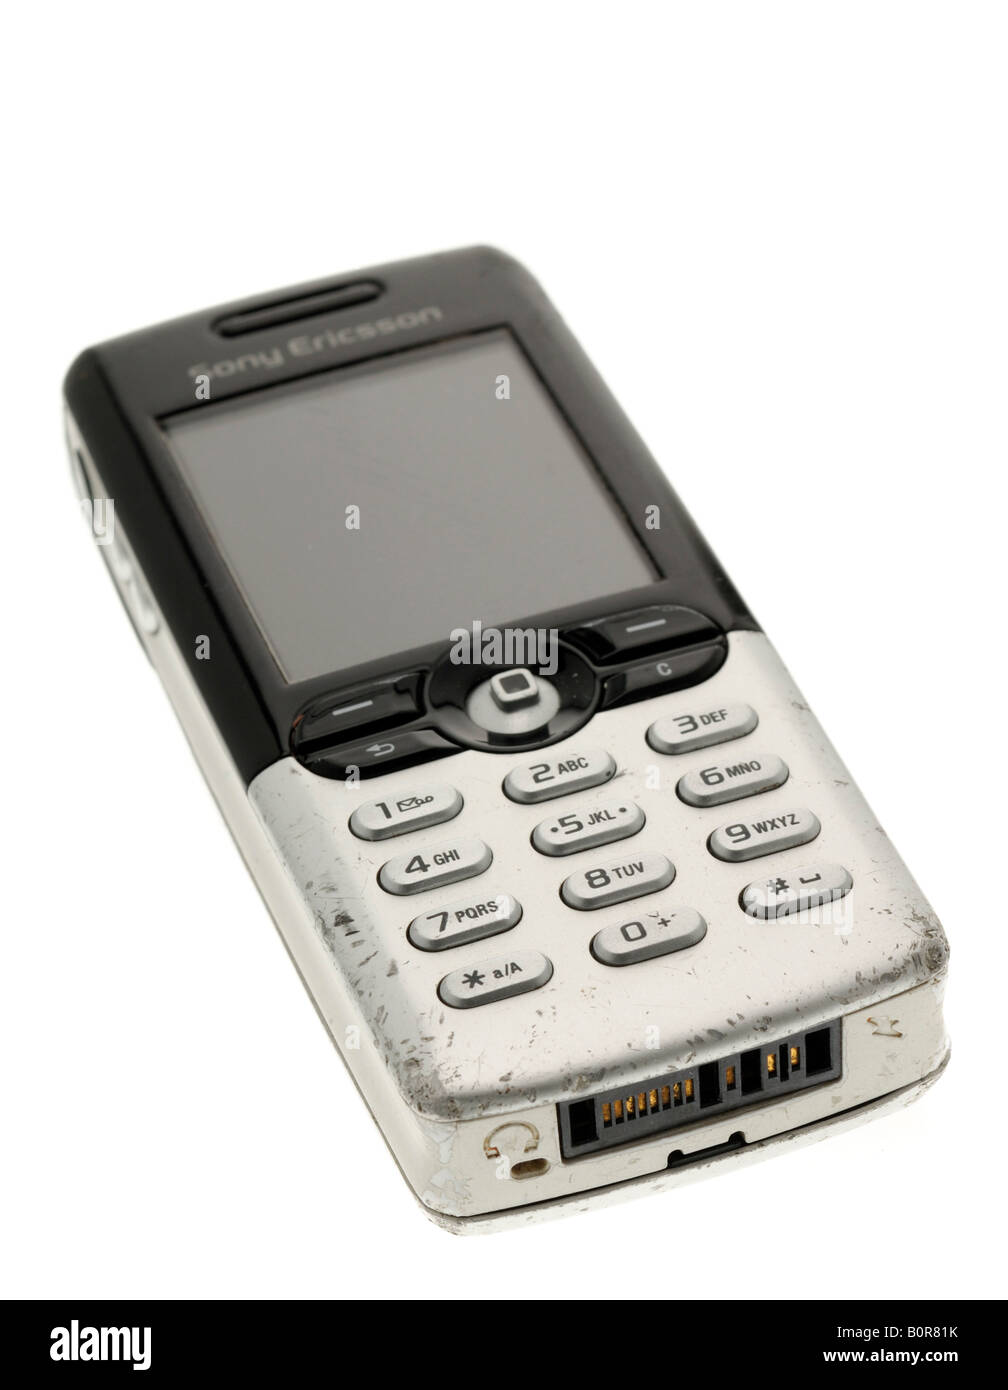 Sony Ericsson Mobile Telephone Stock Photo